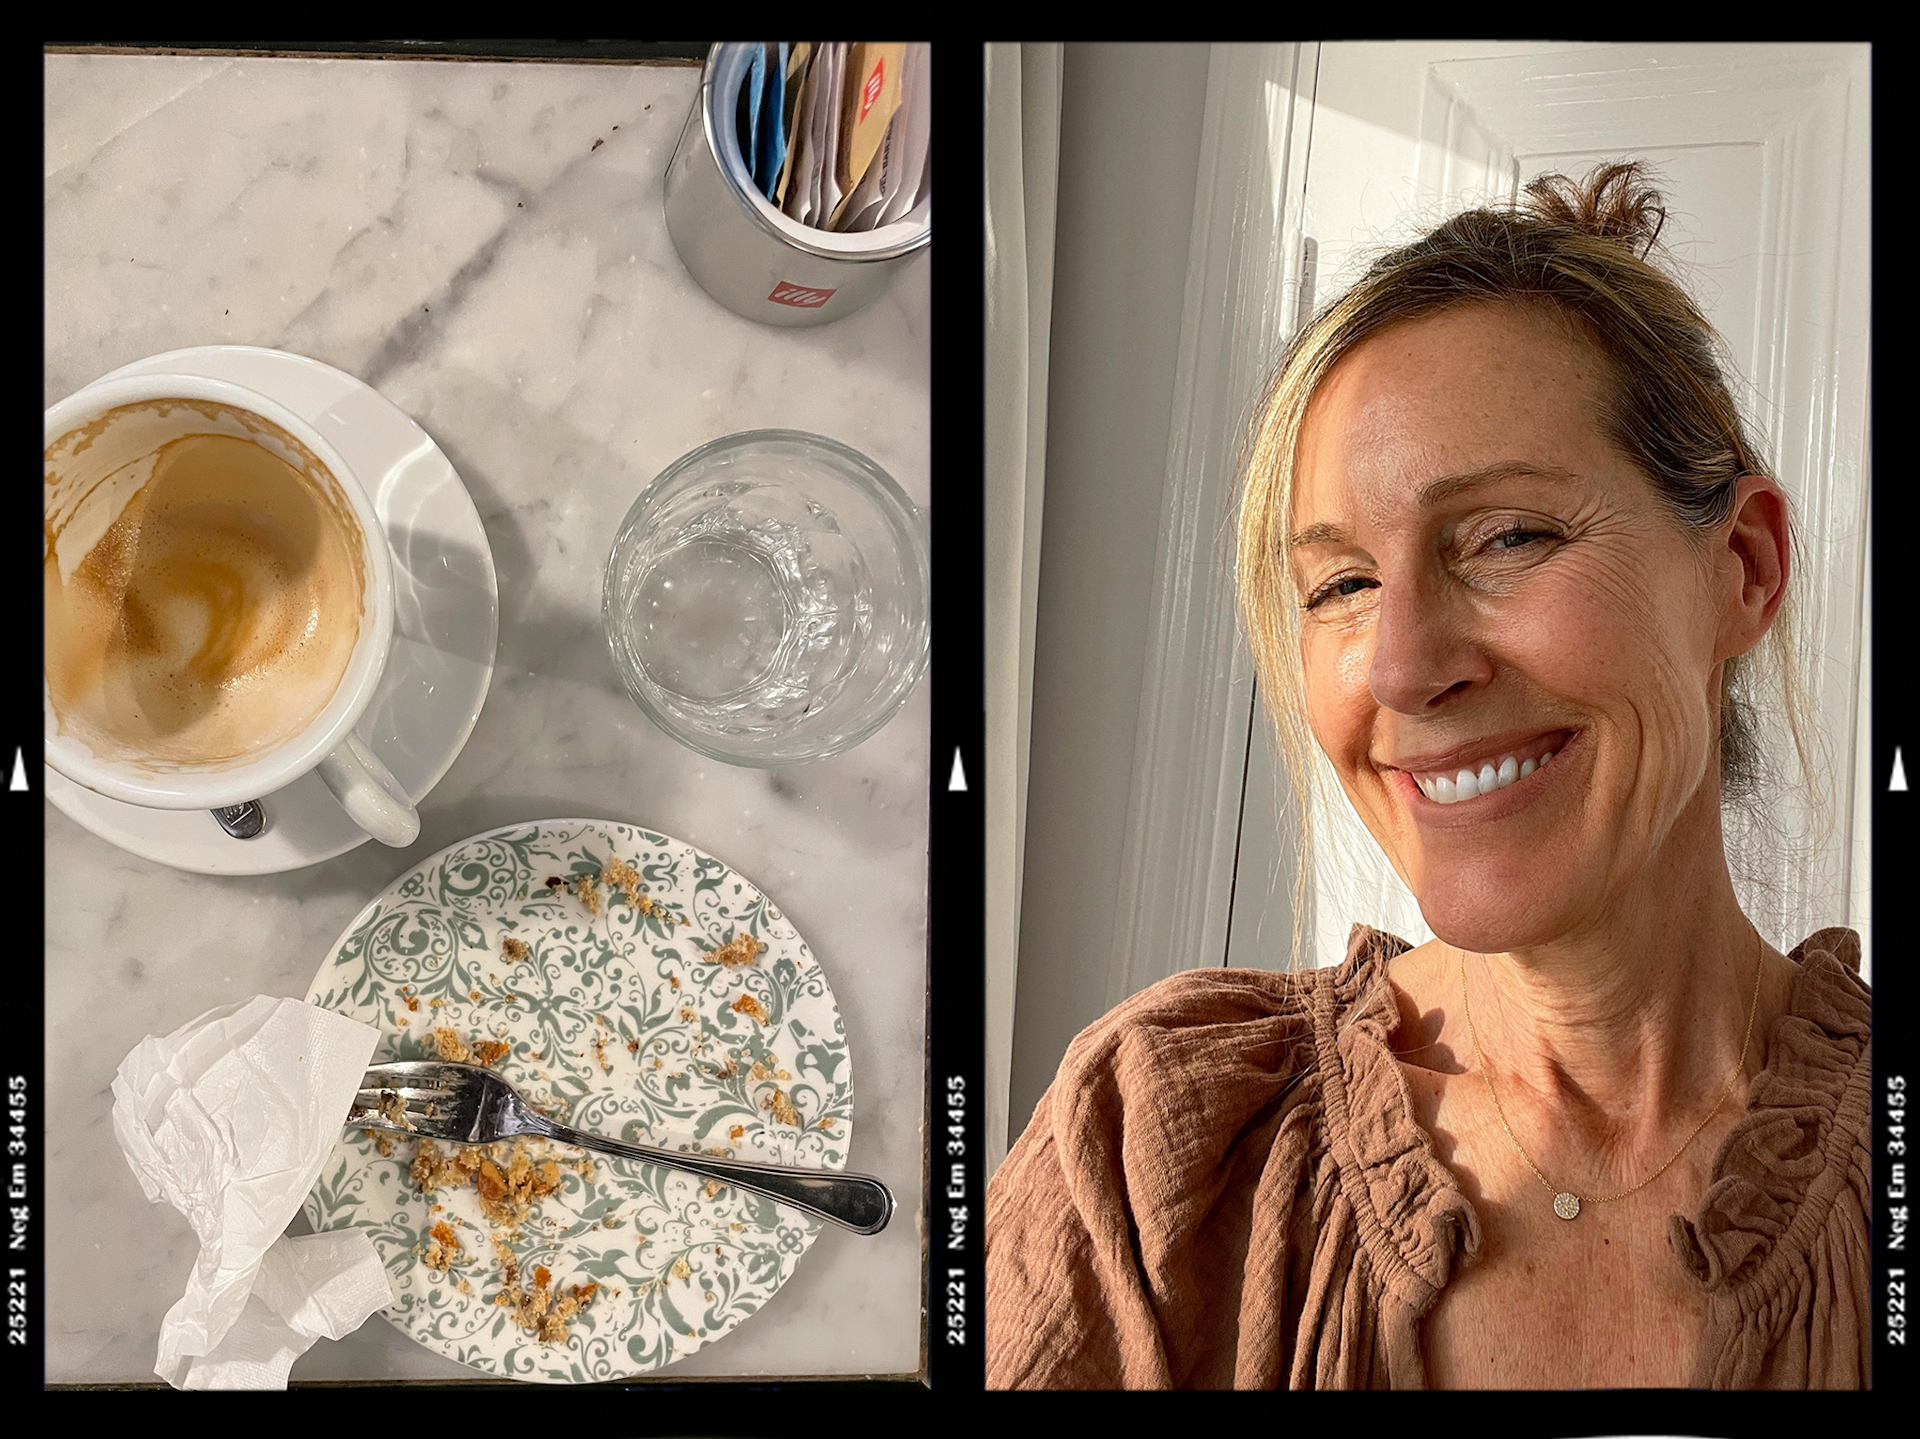 Left: Italian coffee Right: Marcia DeSanctis selfie